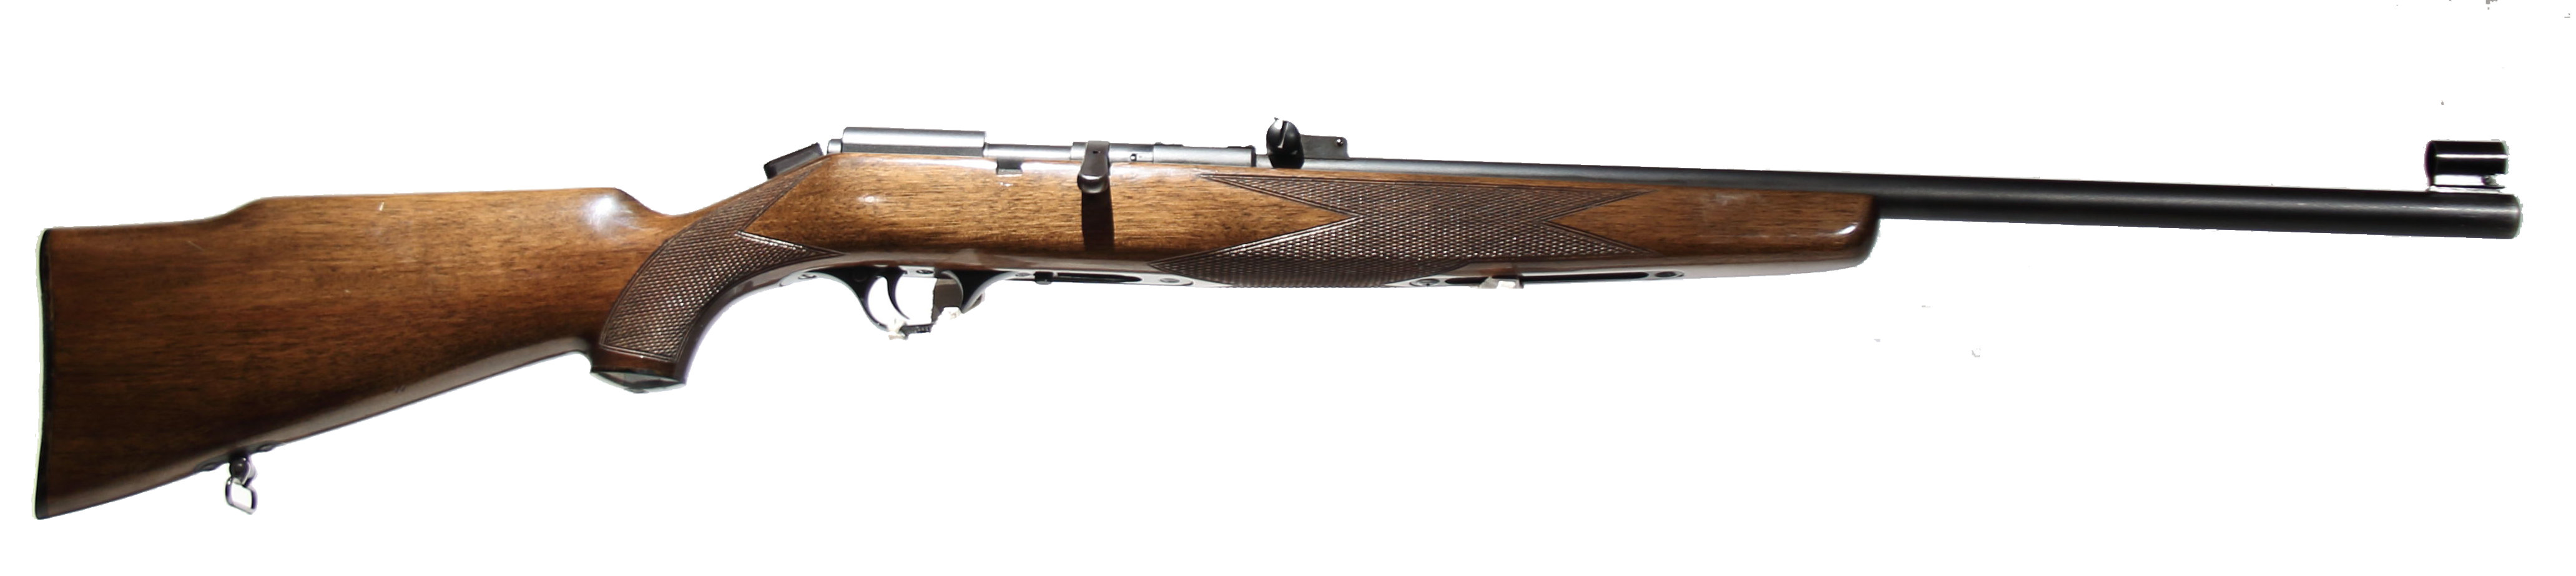 CARABINA SPORTIVA - MARCA BERETTA - MODELLO OLIMPIA - CALIBRO 22 Long Rifle 198